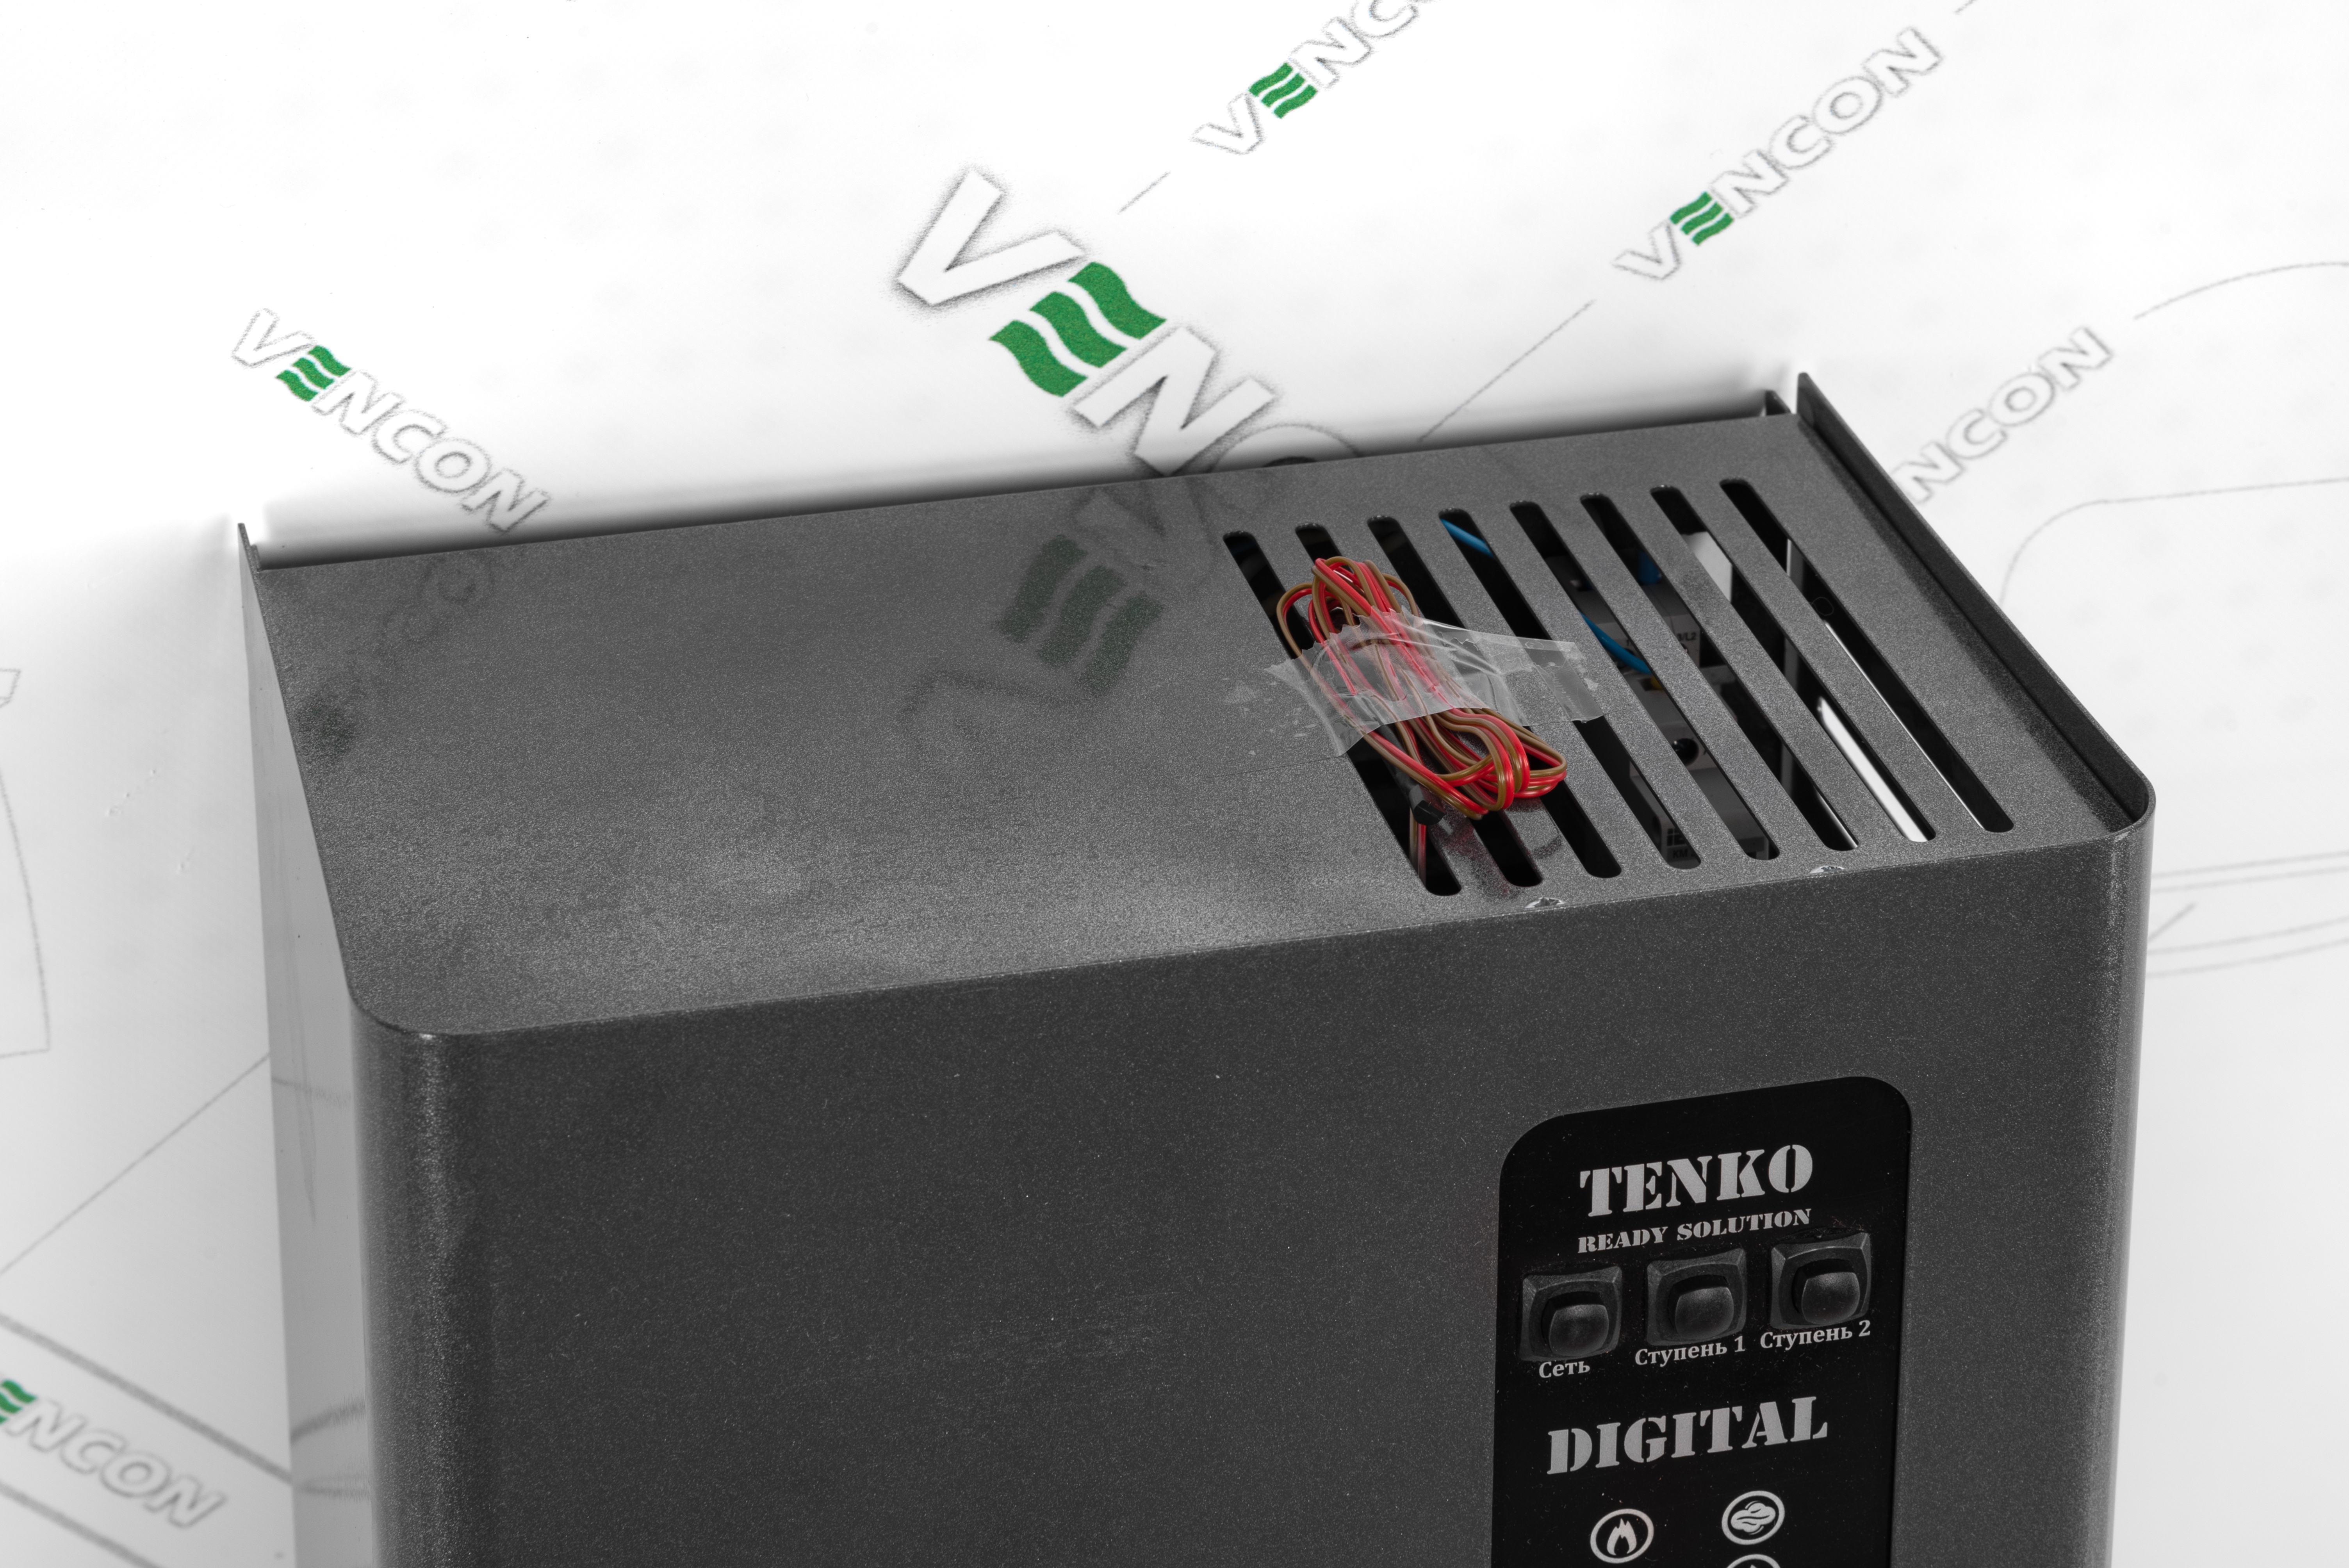 продаём Tenko Digital Standart 3 220 в Украине - фото 4